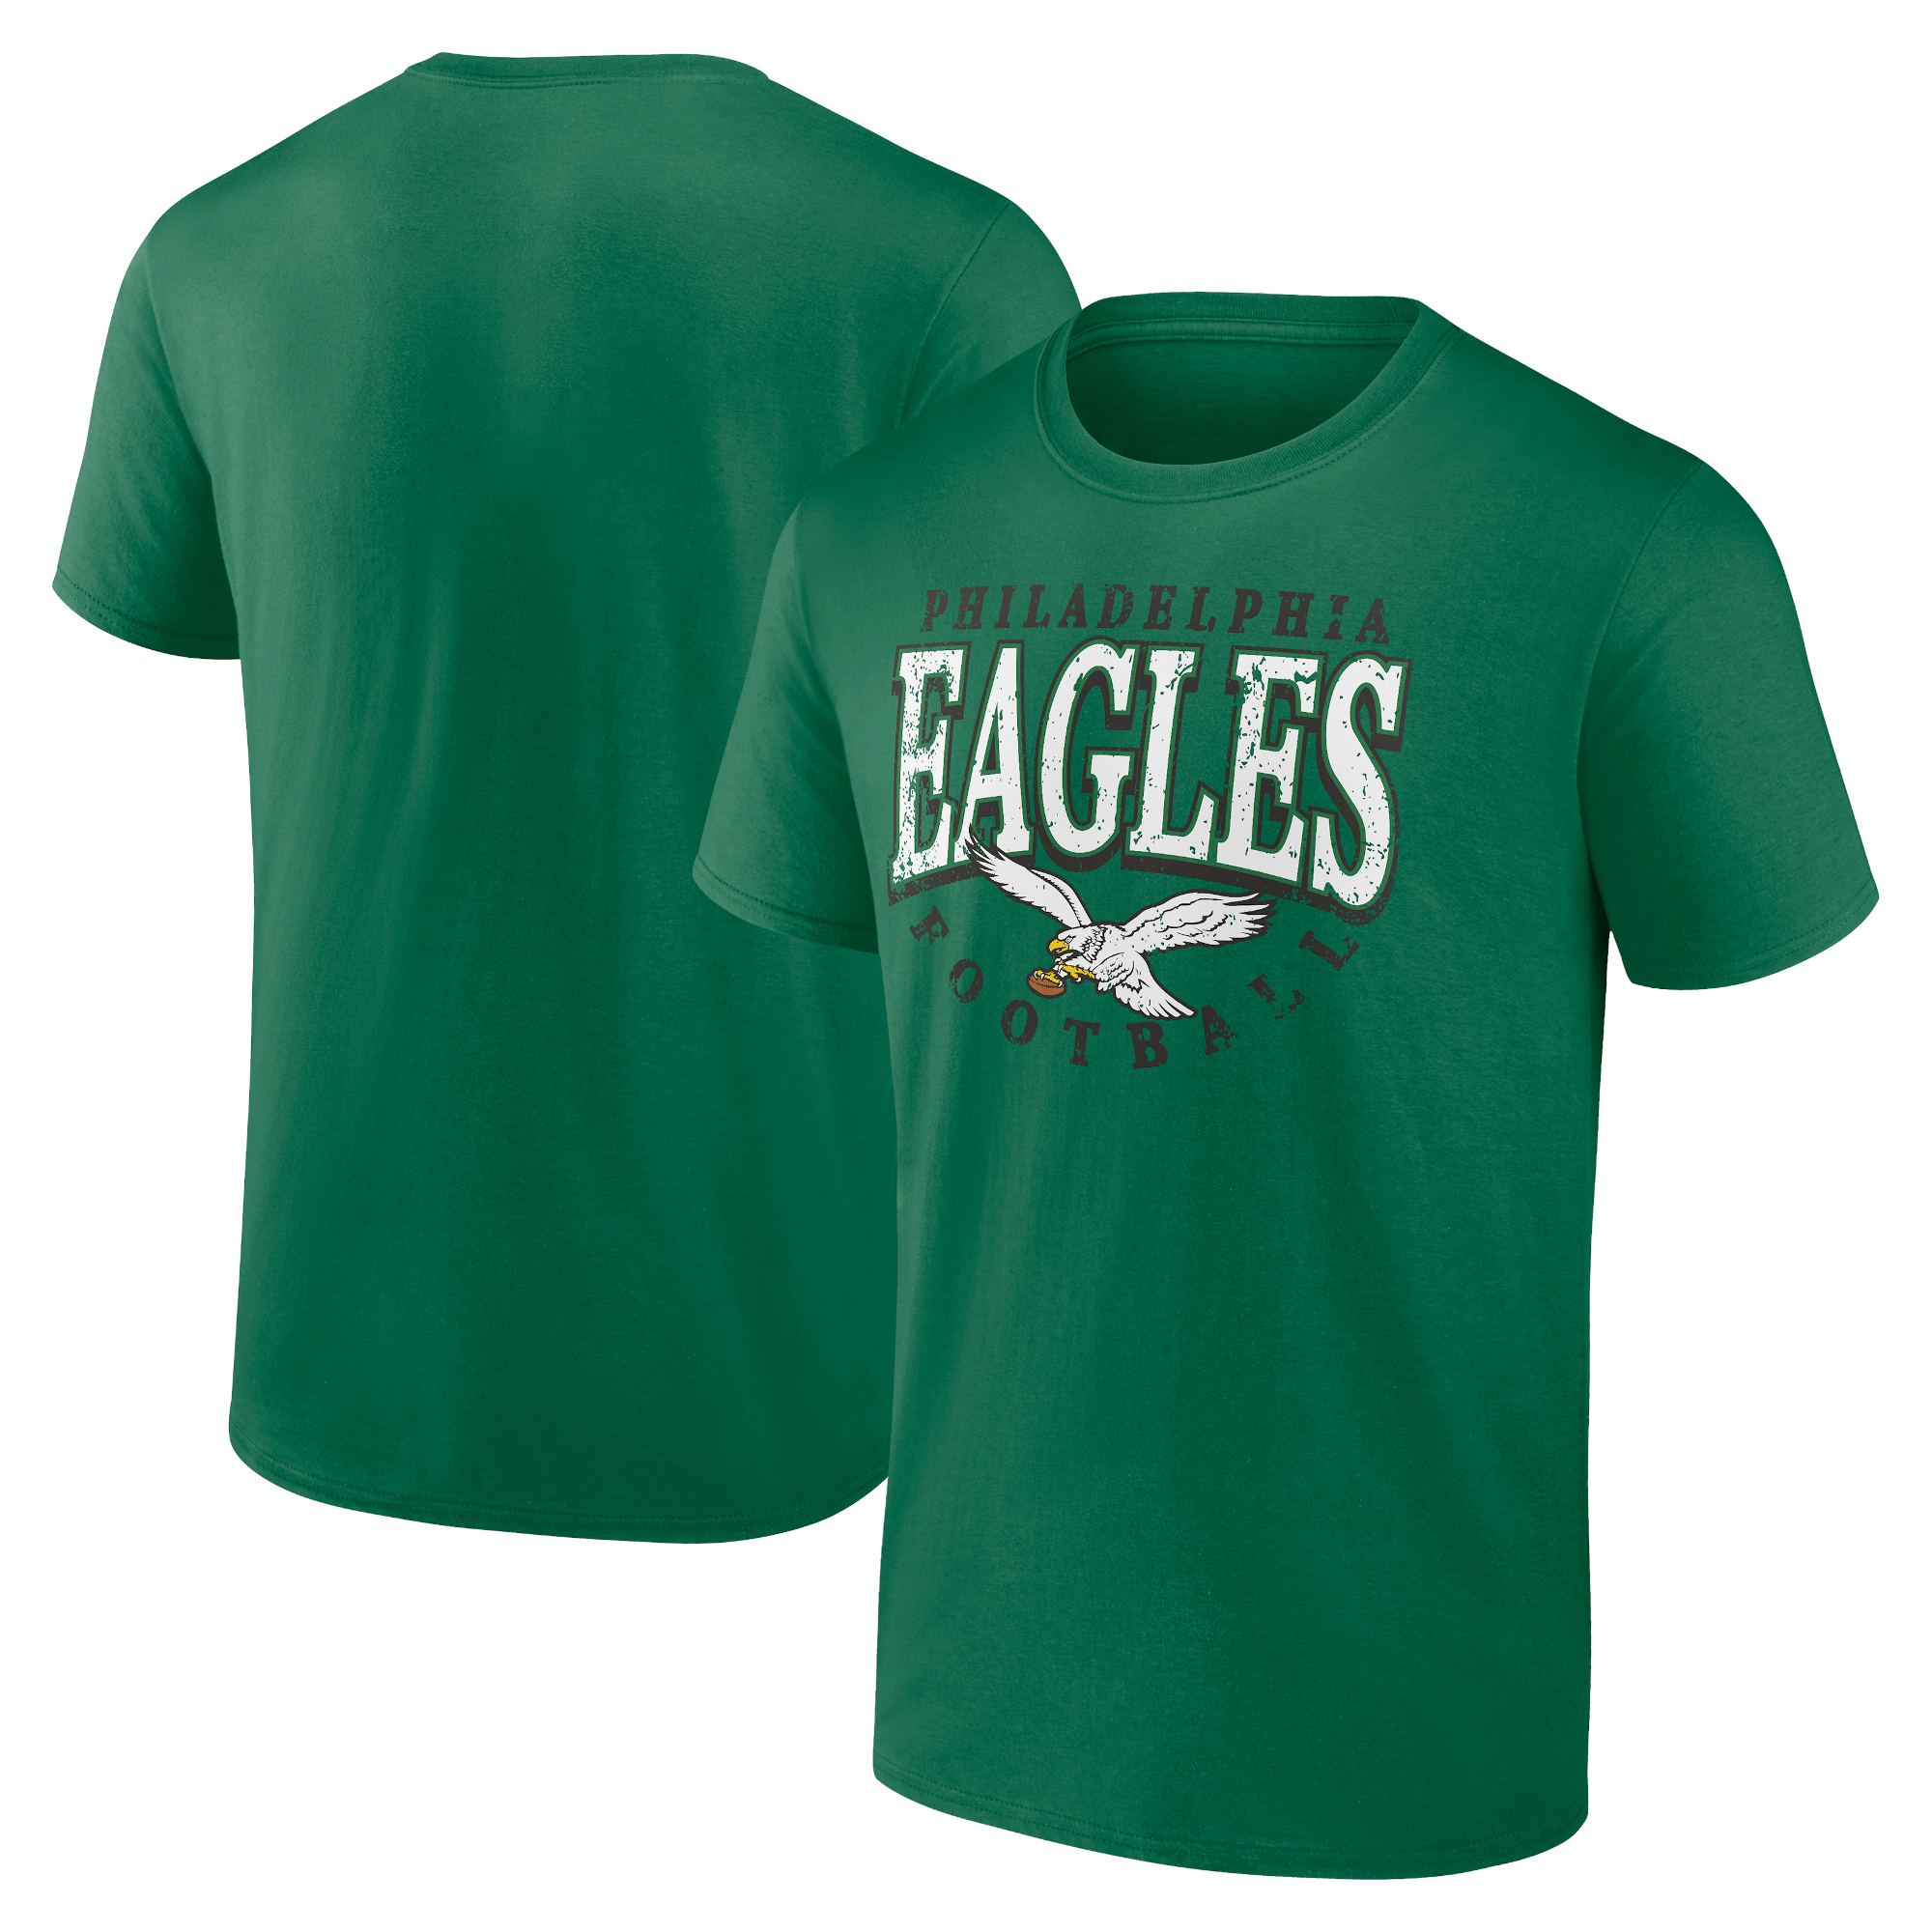 Philadelphia Eagles Fanatics – Throwback-T-Shirt in Kelly Green für Herren, groß und groß